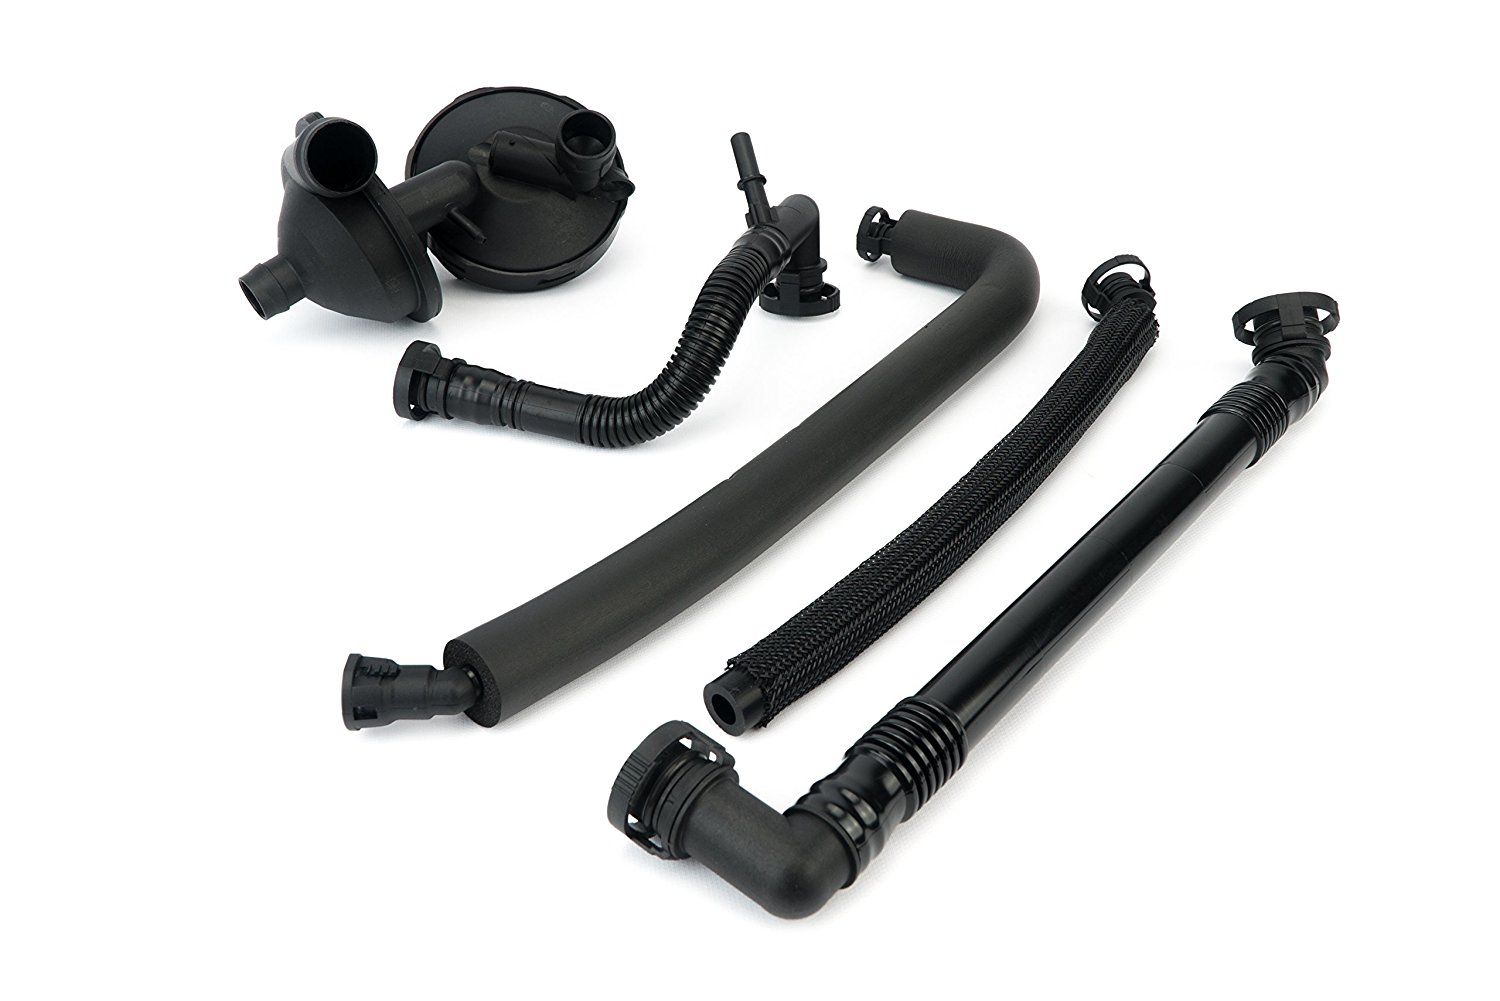 Crankcase Vent Valve Breather Hose Kit for BMW E46, E39, E60 - 5 Piece Value Kit Image